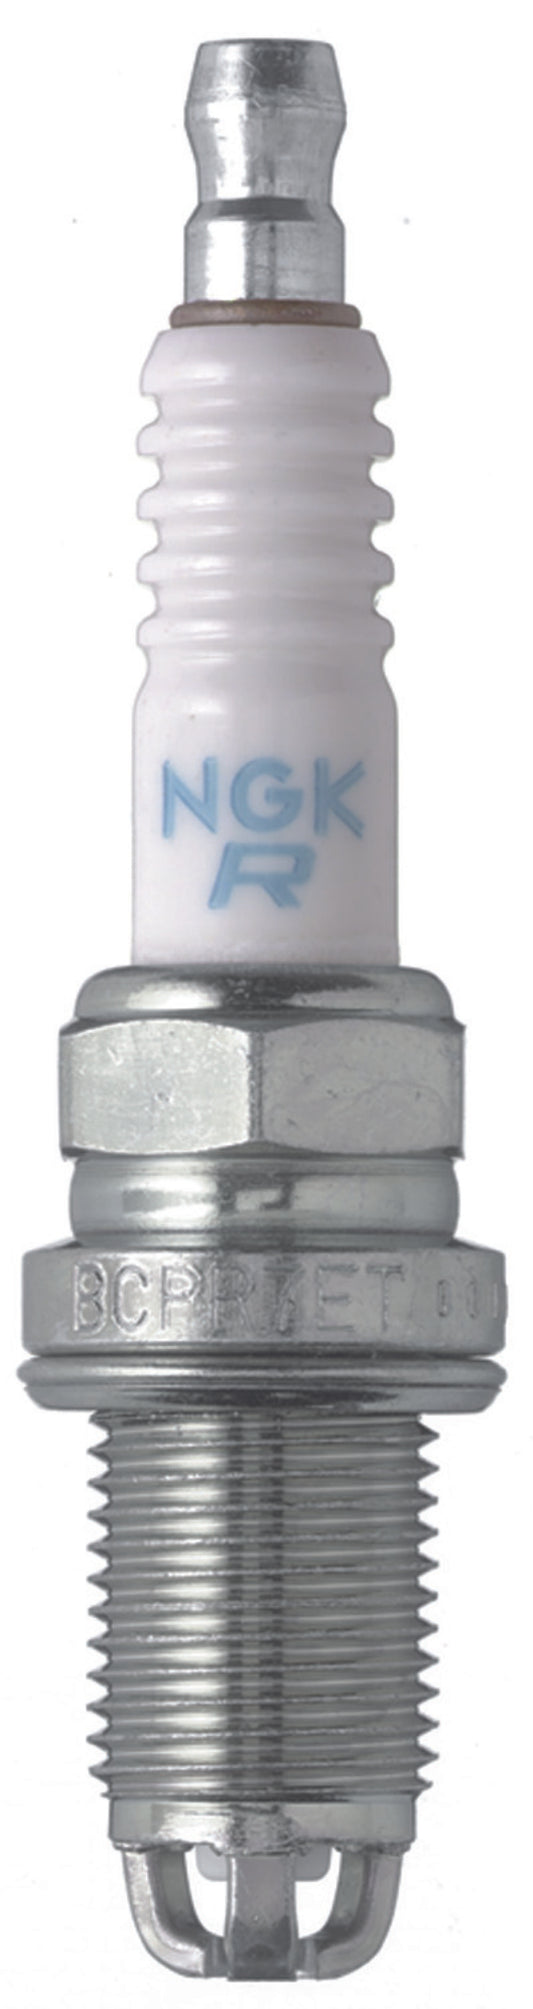 NGK Standard Spark Plug Box of 4 (BCPR7ET)